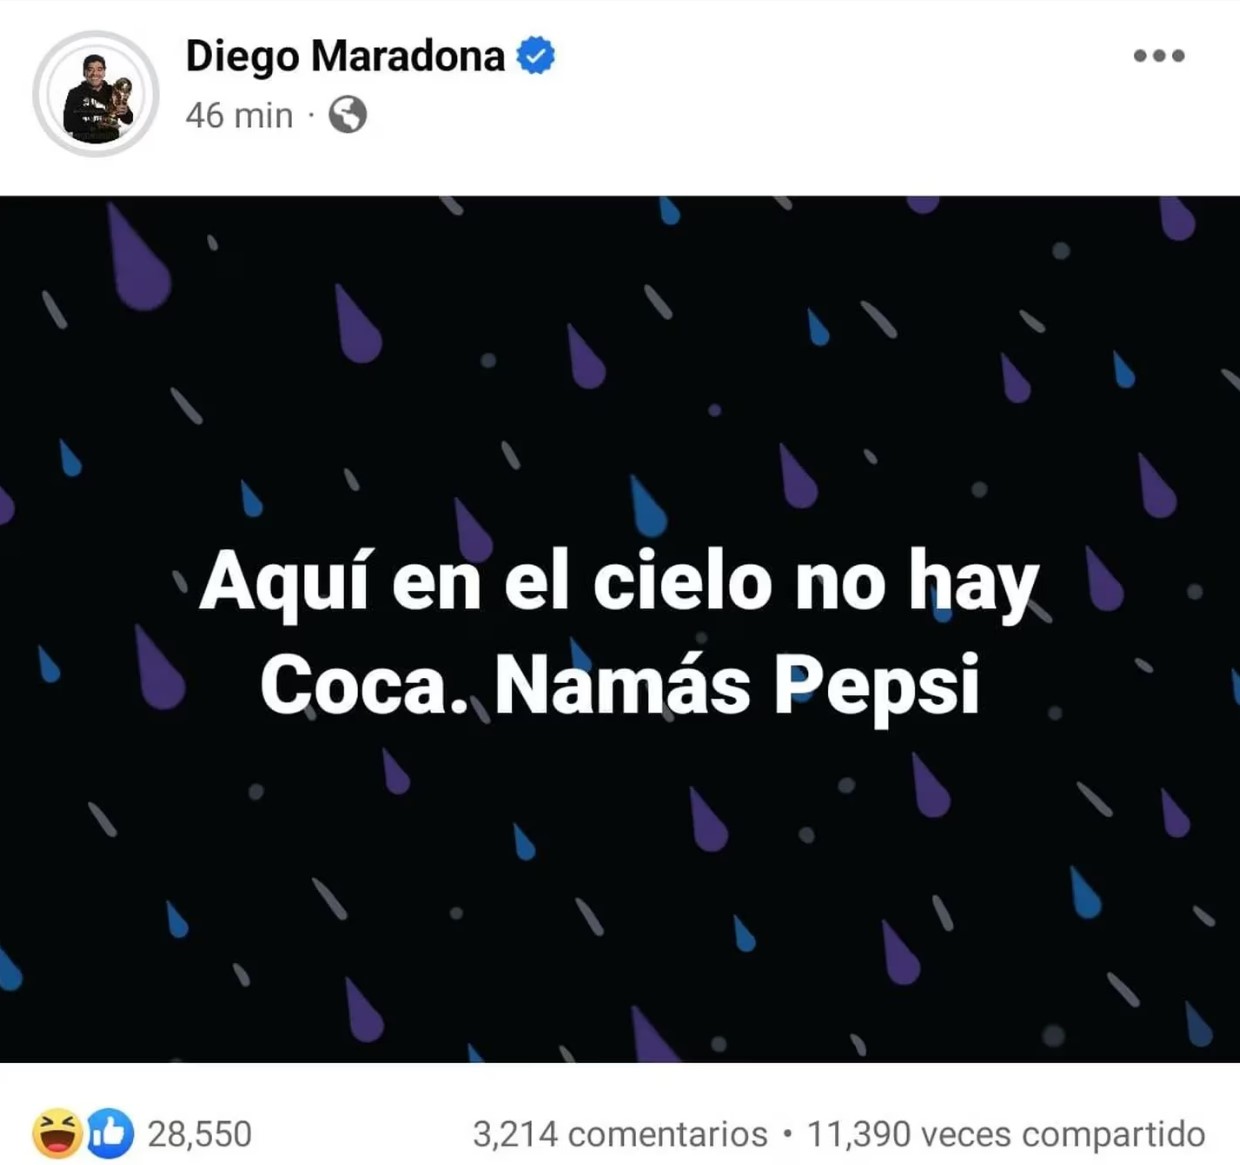 Otro de las publicaciones que realizaron las personas que hackearon la cuenta de Diego Maradona